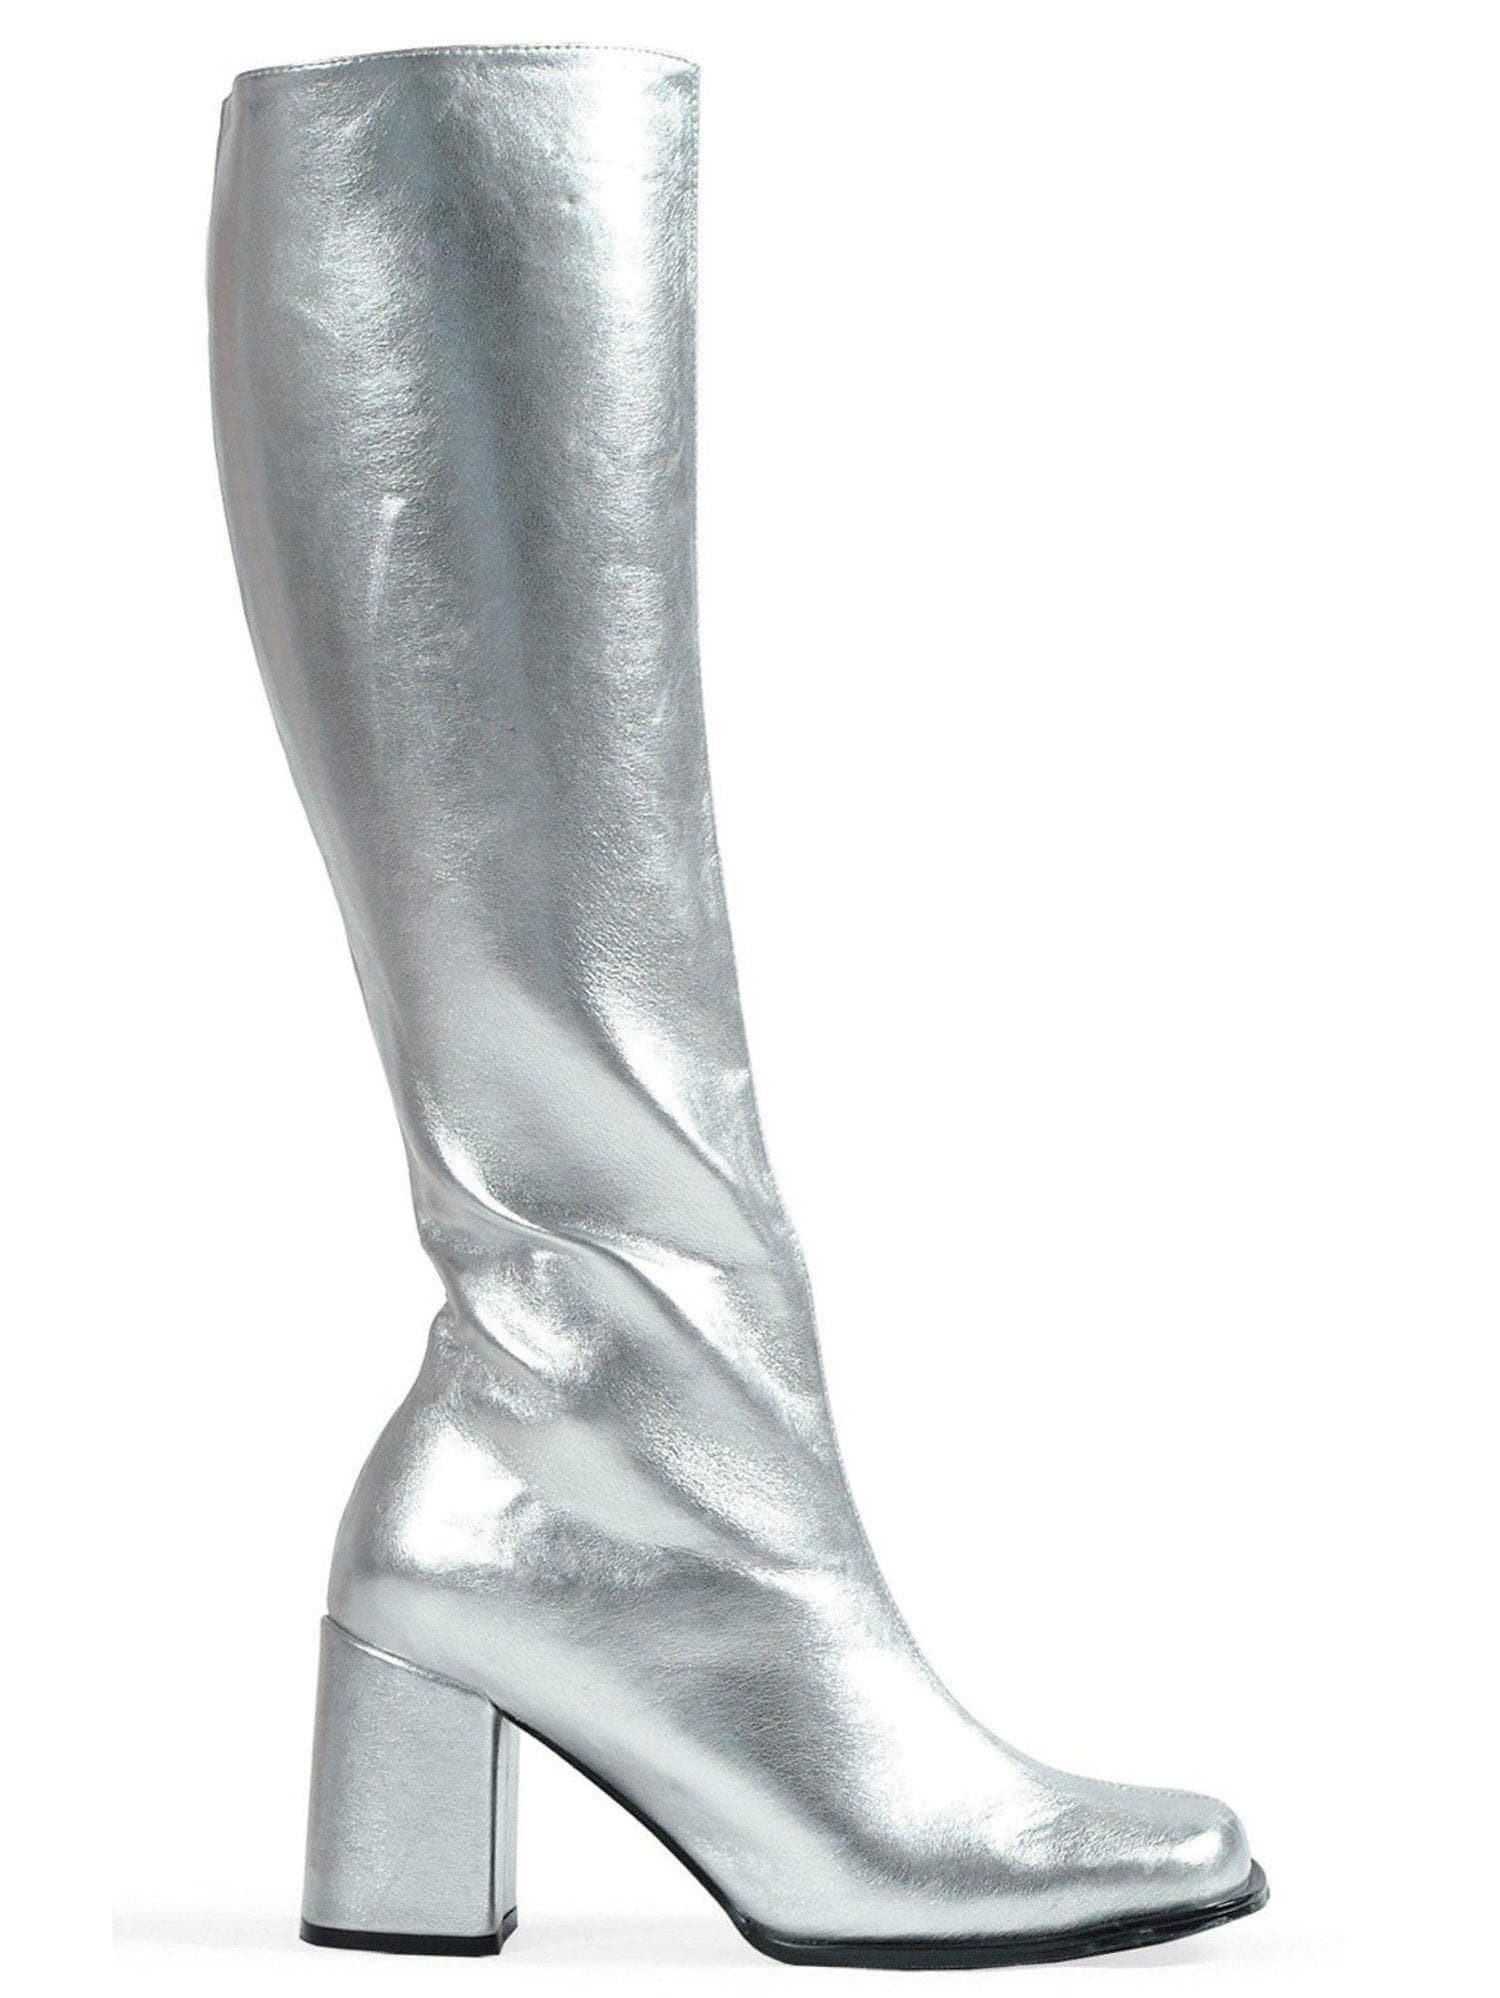 Adult Silver Metallic Go Go Boots - costumes.com